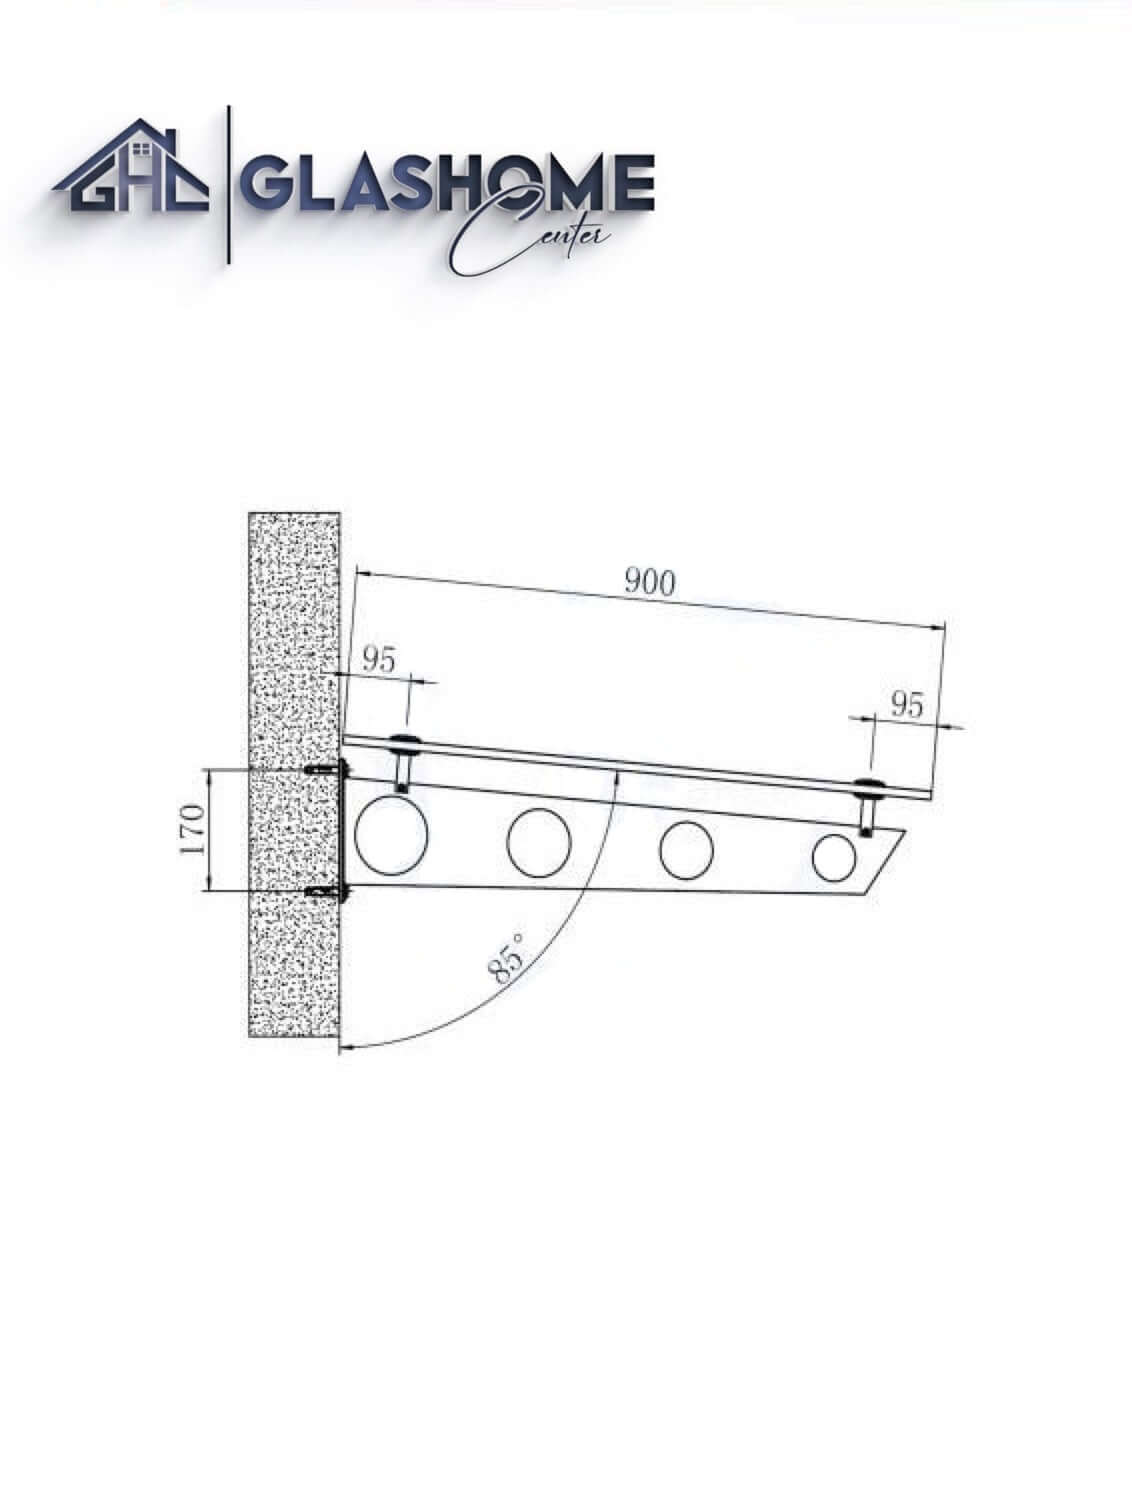 GlasHomeCenter - Glasvordach - Grauglas - 120x90cm - 13.1mm VSG - incl. 2 varianti Edelstahlhalterungen nere "Stoccolma"